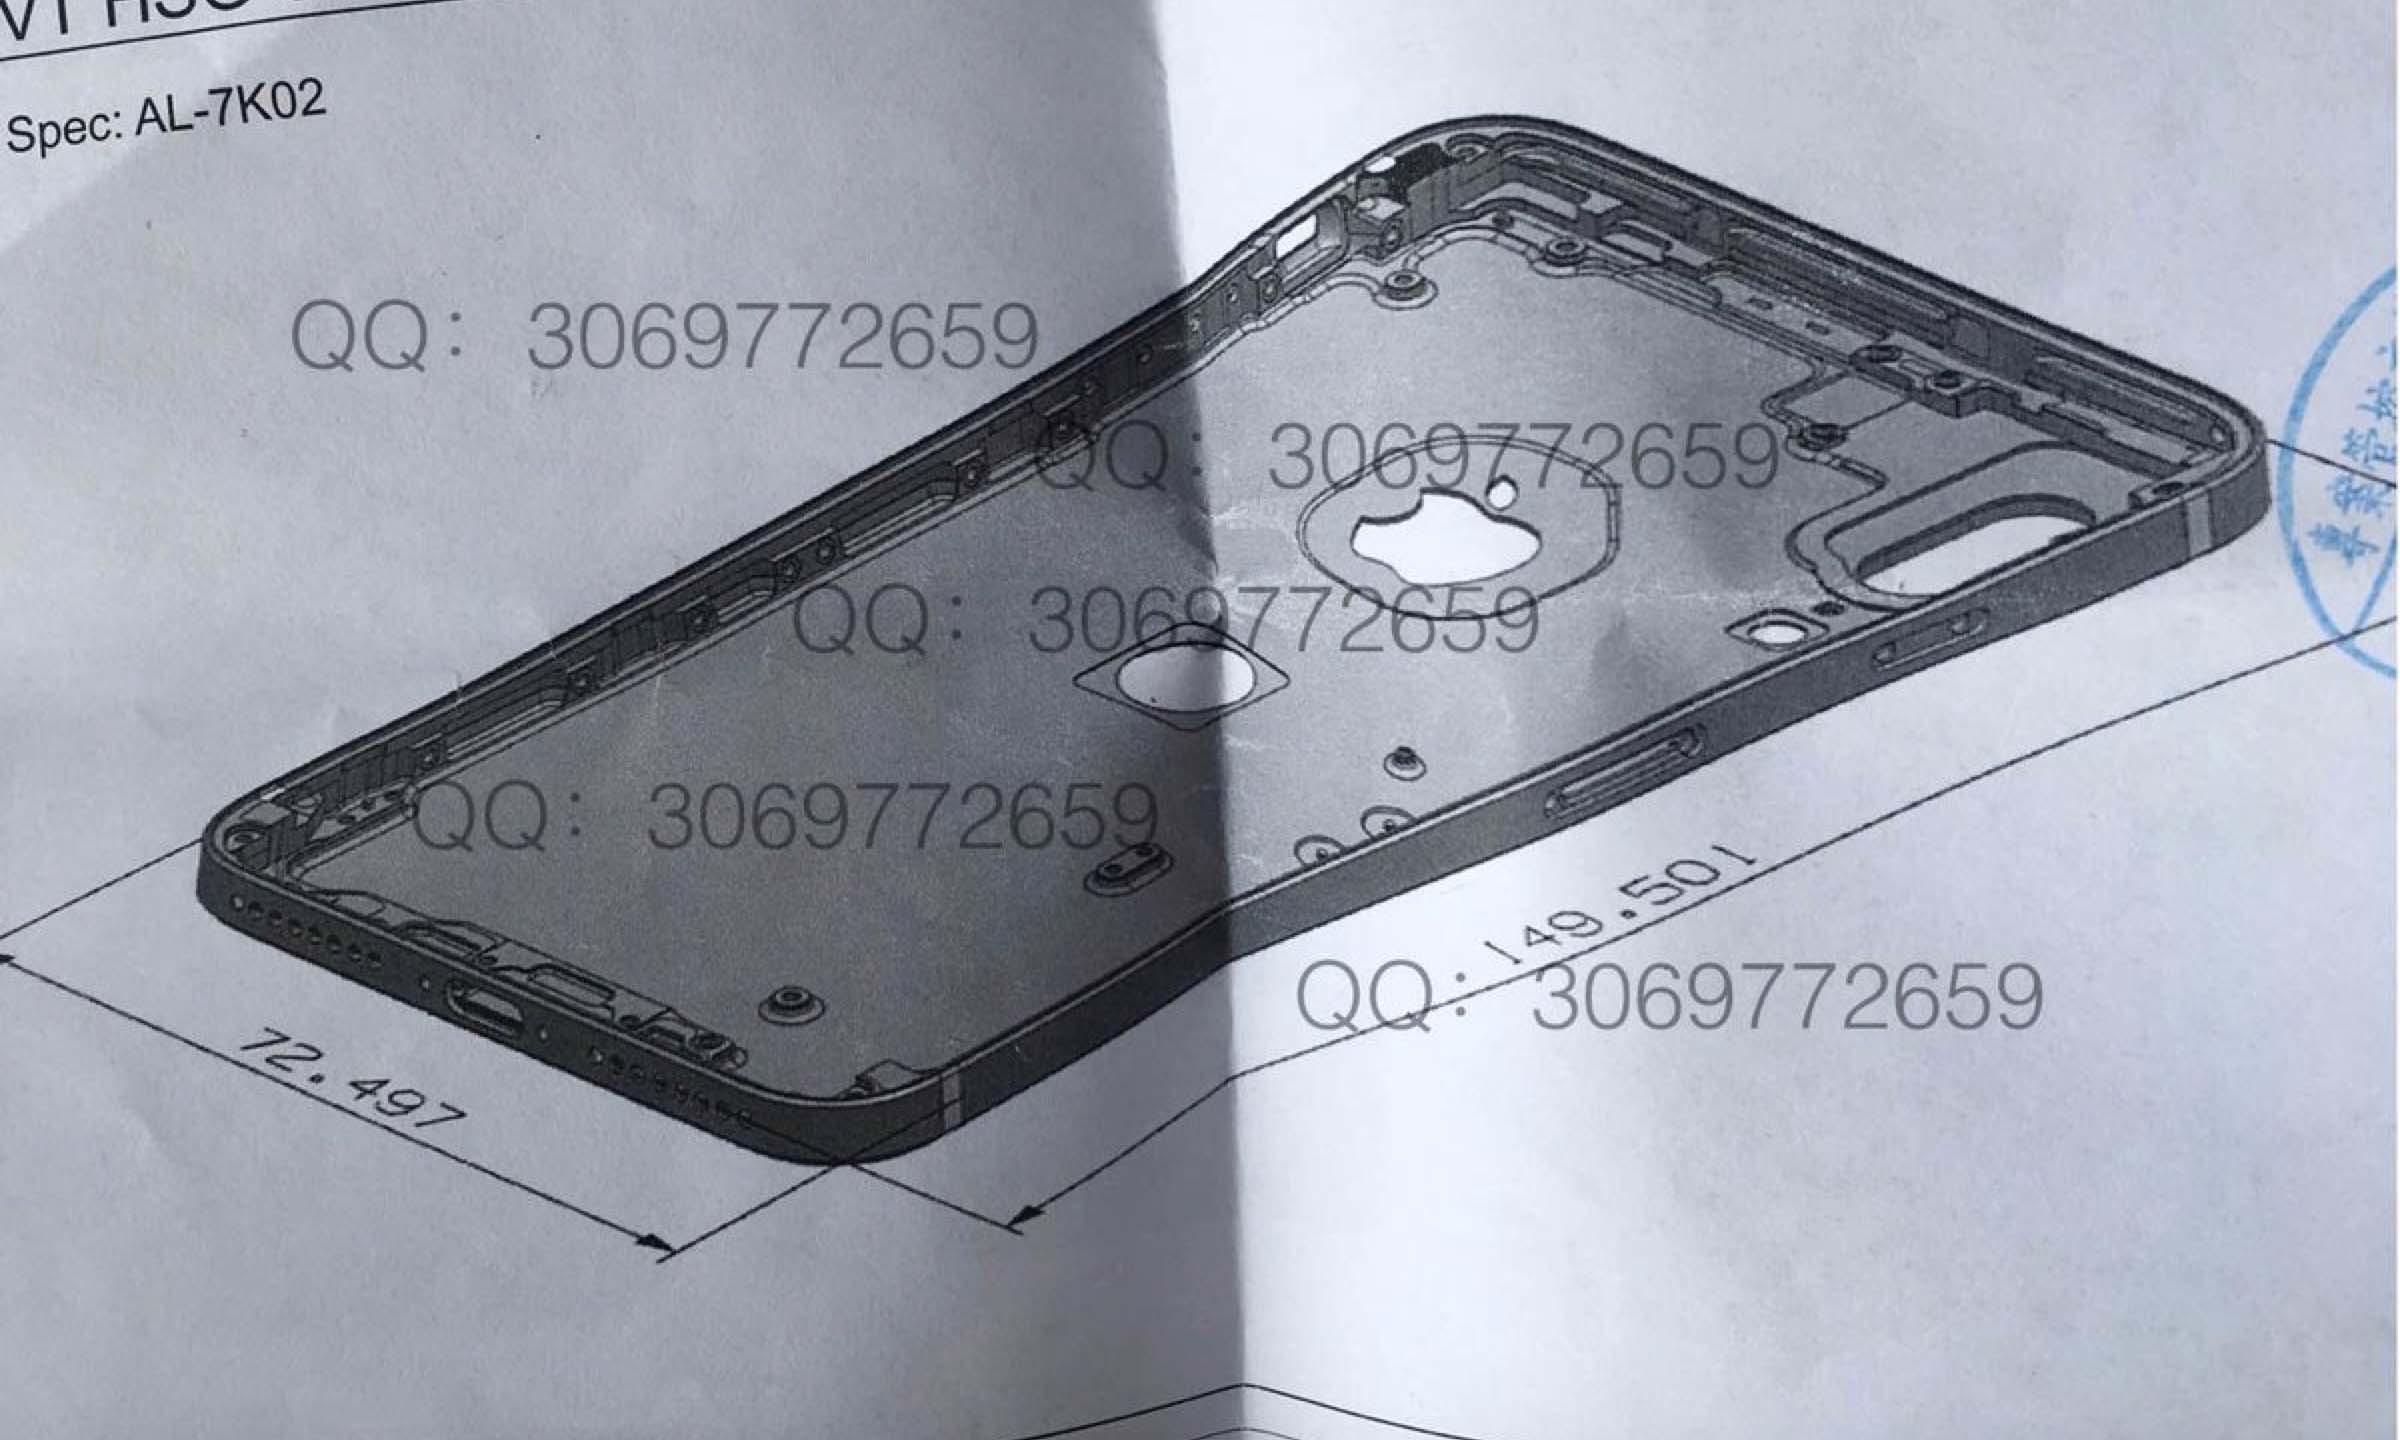 这张后壳设计图纸曝光了 iPhone 8 的垂直摄像头设计